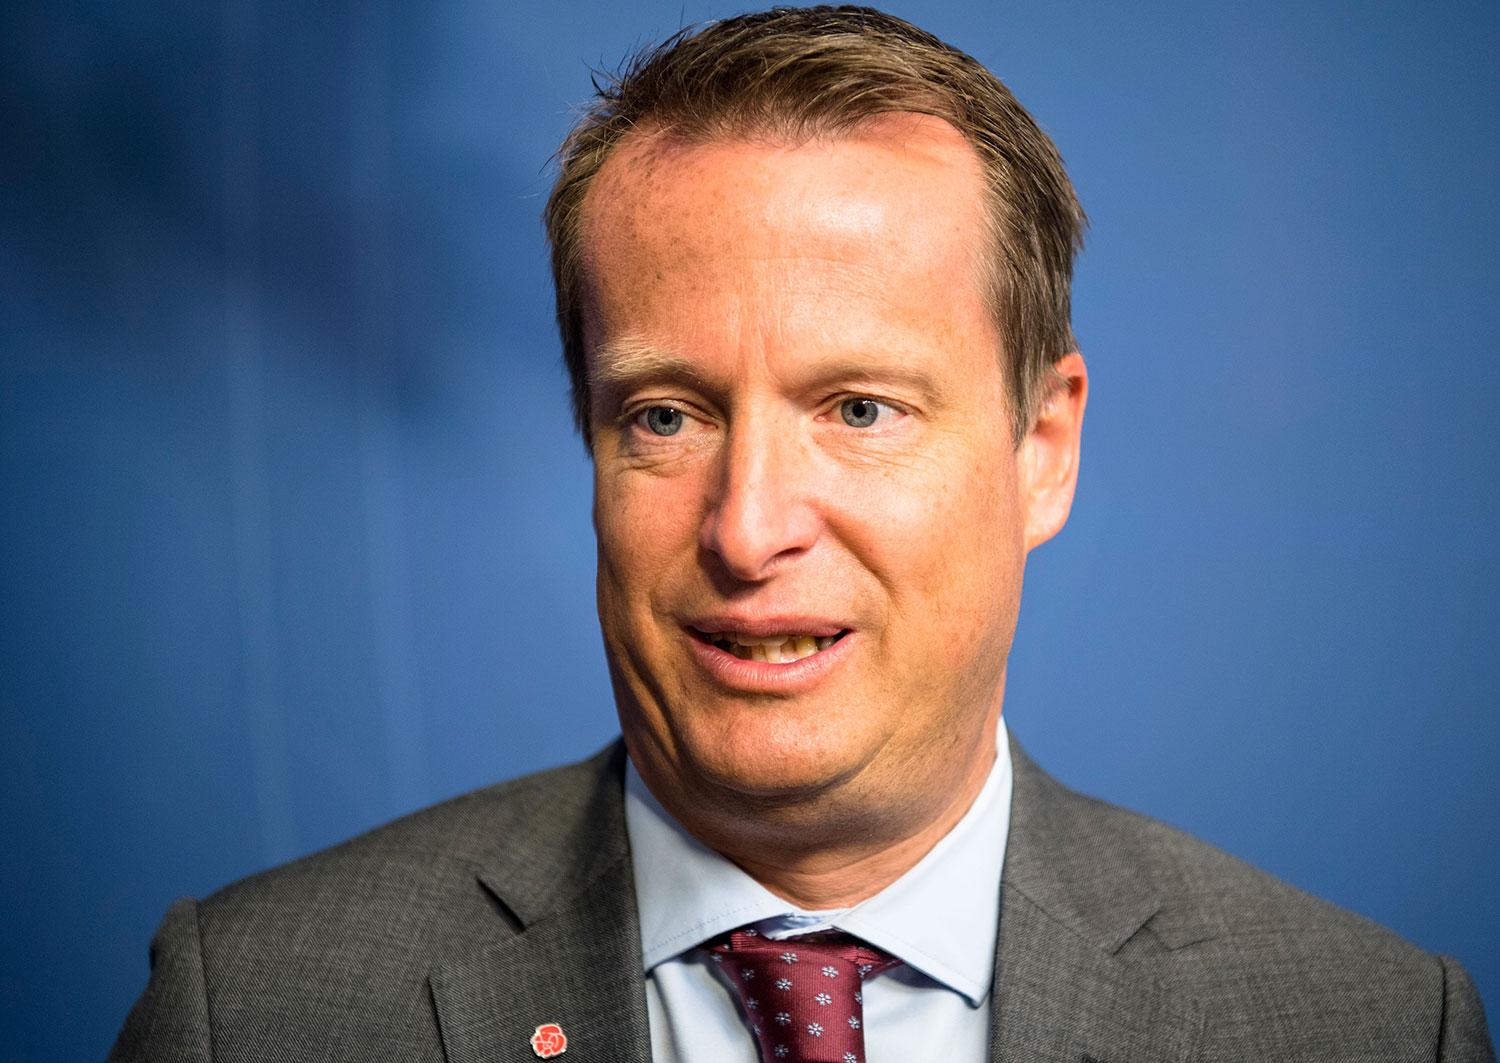 Inrikesminister Anders Ygeman (S).